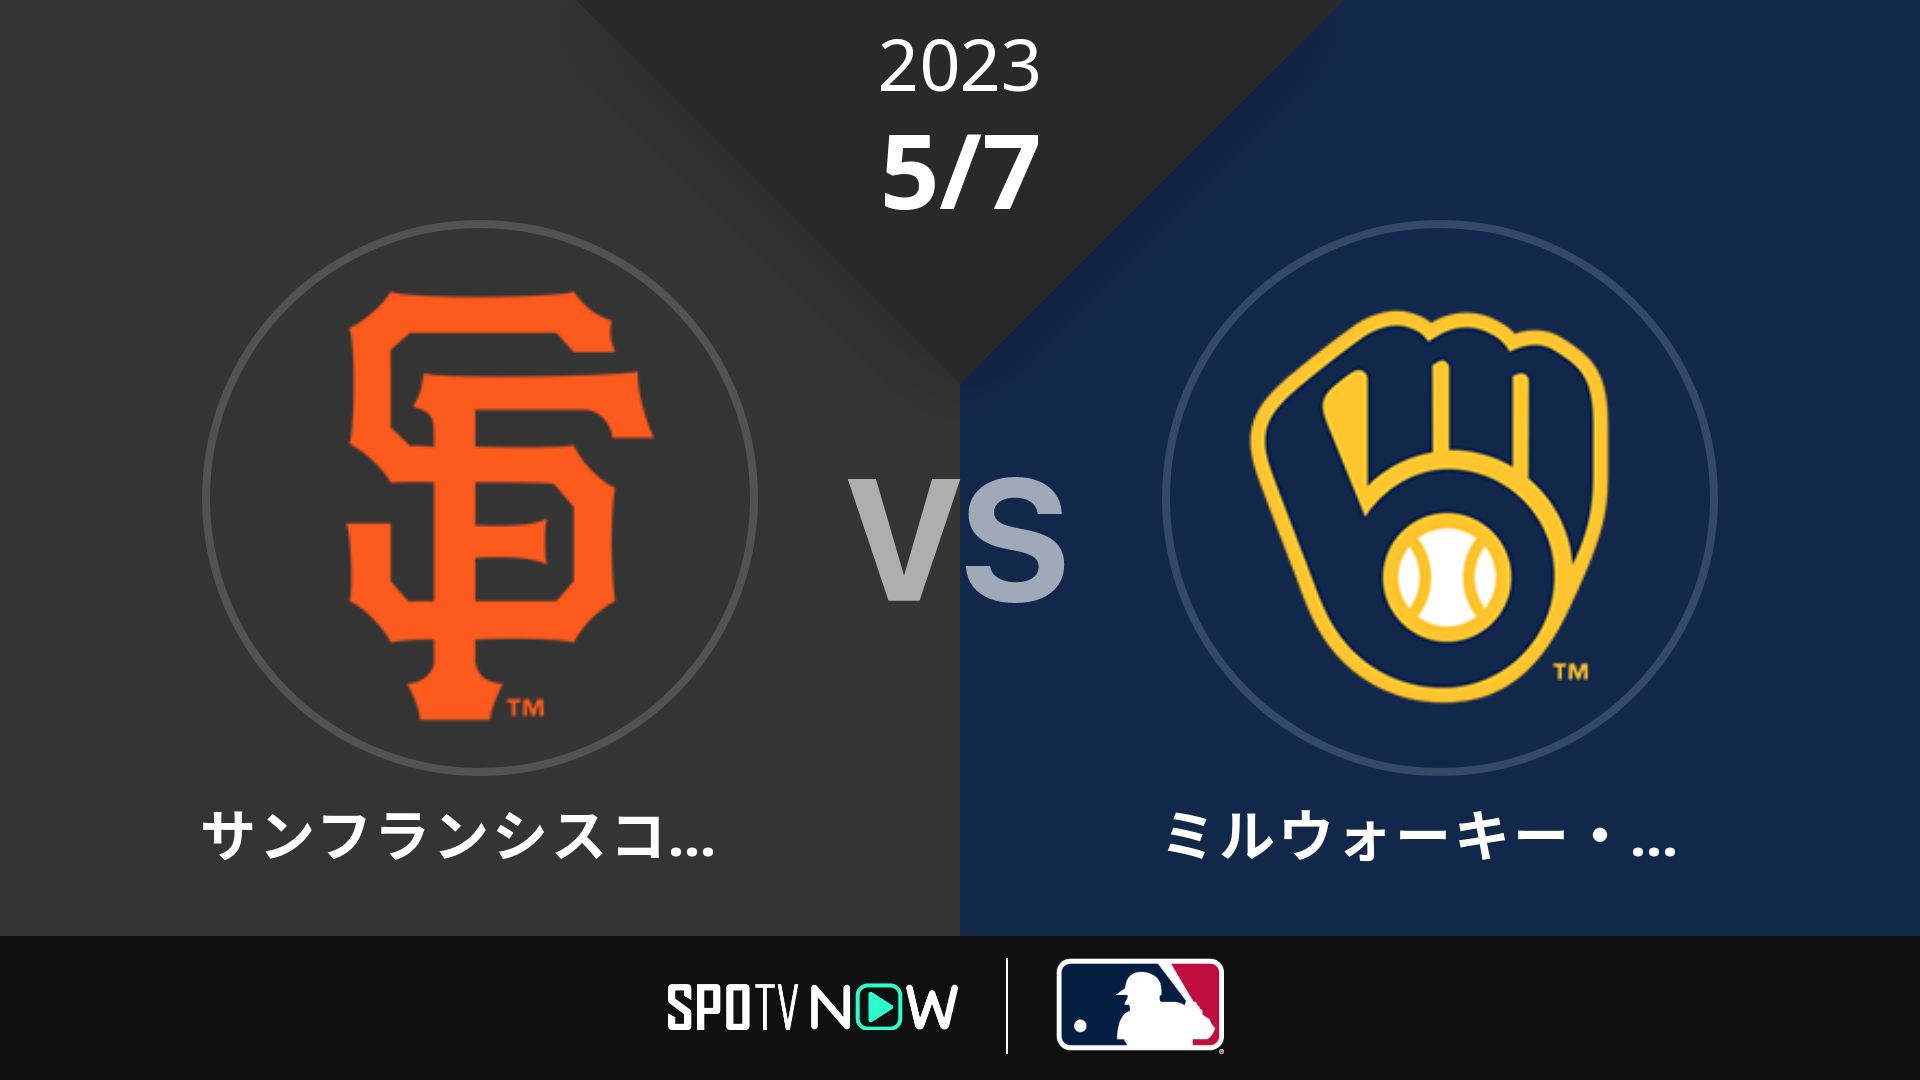 2023/5/7 ジャイアンツ vs ブリュワーズ [MLB]